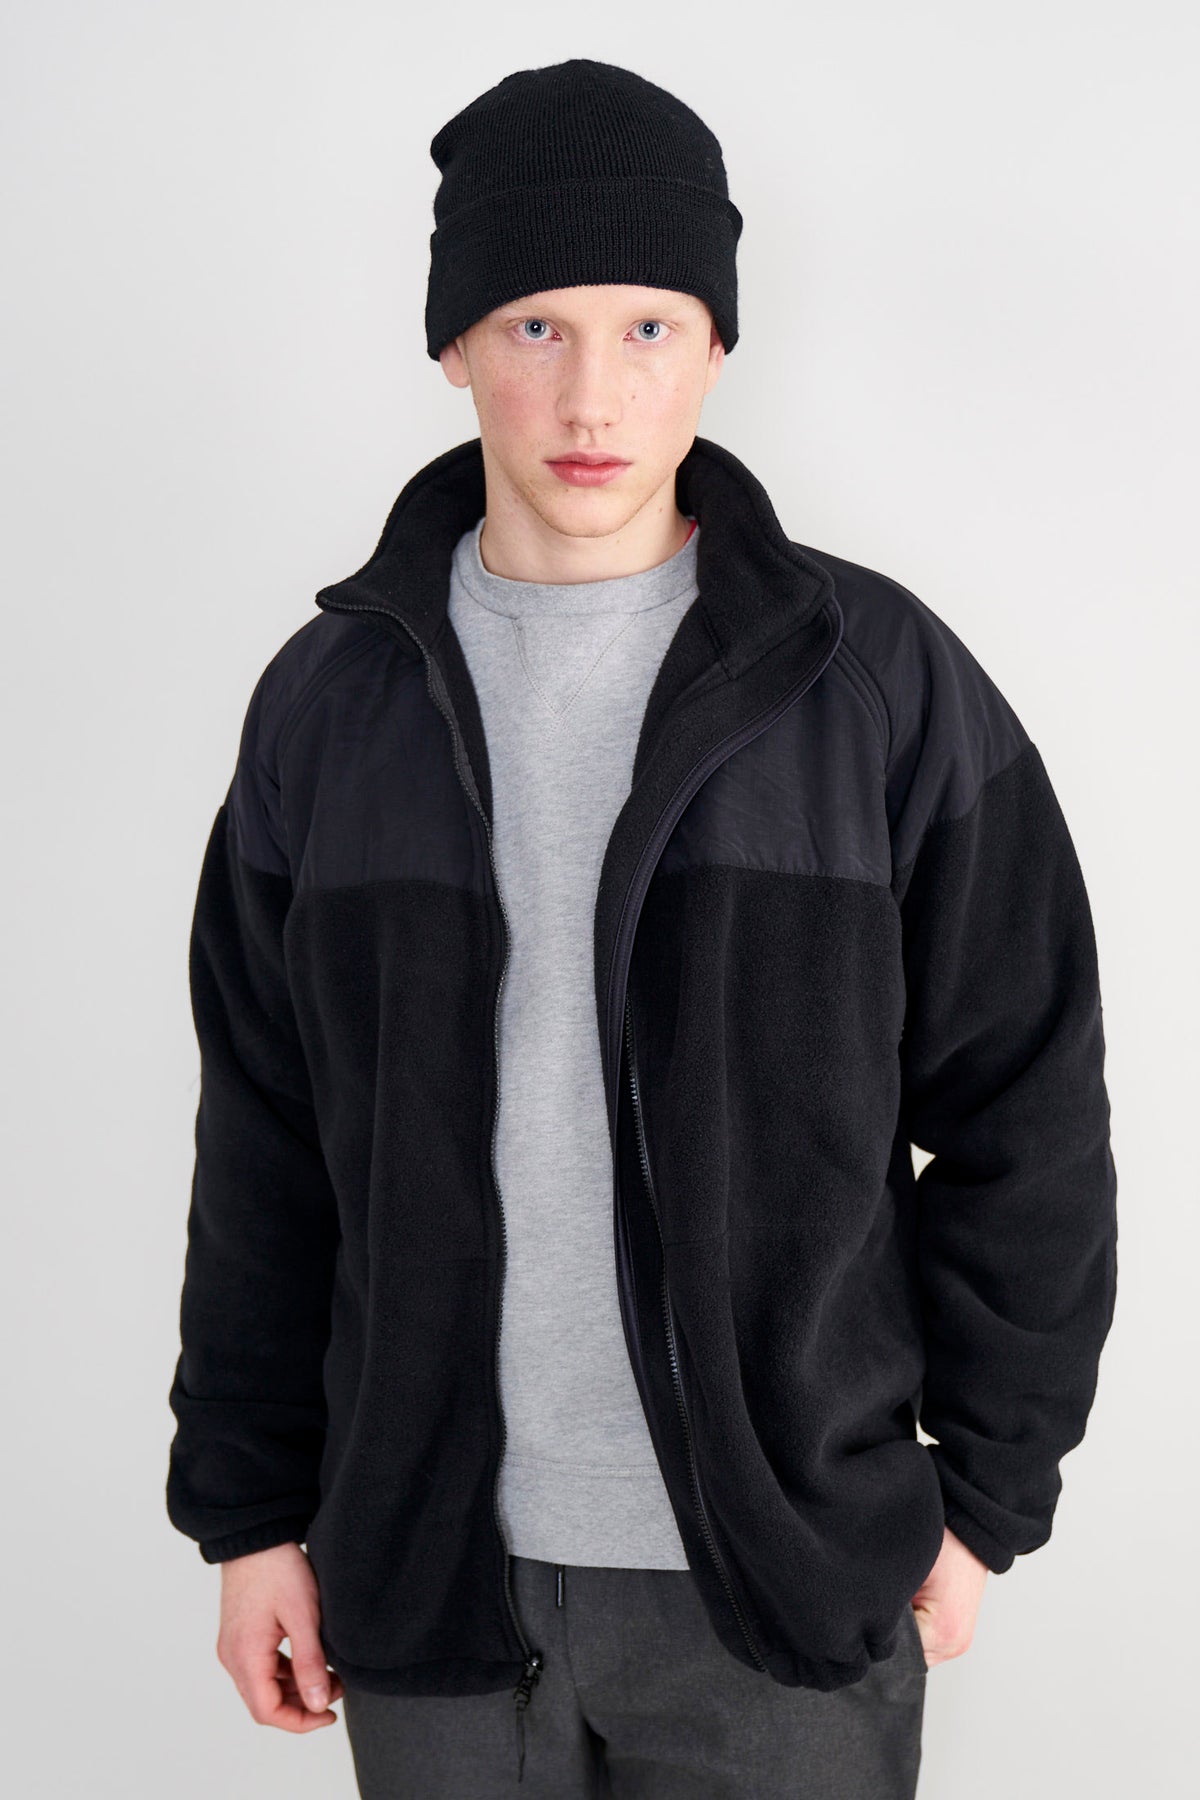 All In Motion Polartec Fleece Jacket Black 2XL Mens Full Zip Pockets  82099833